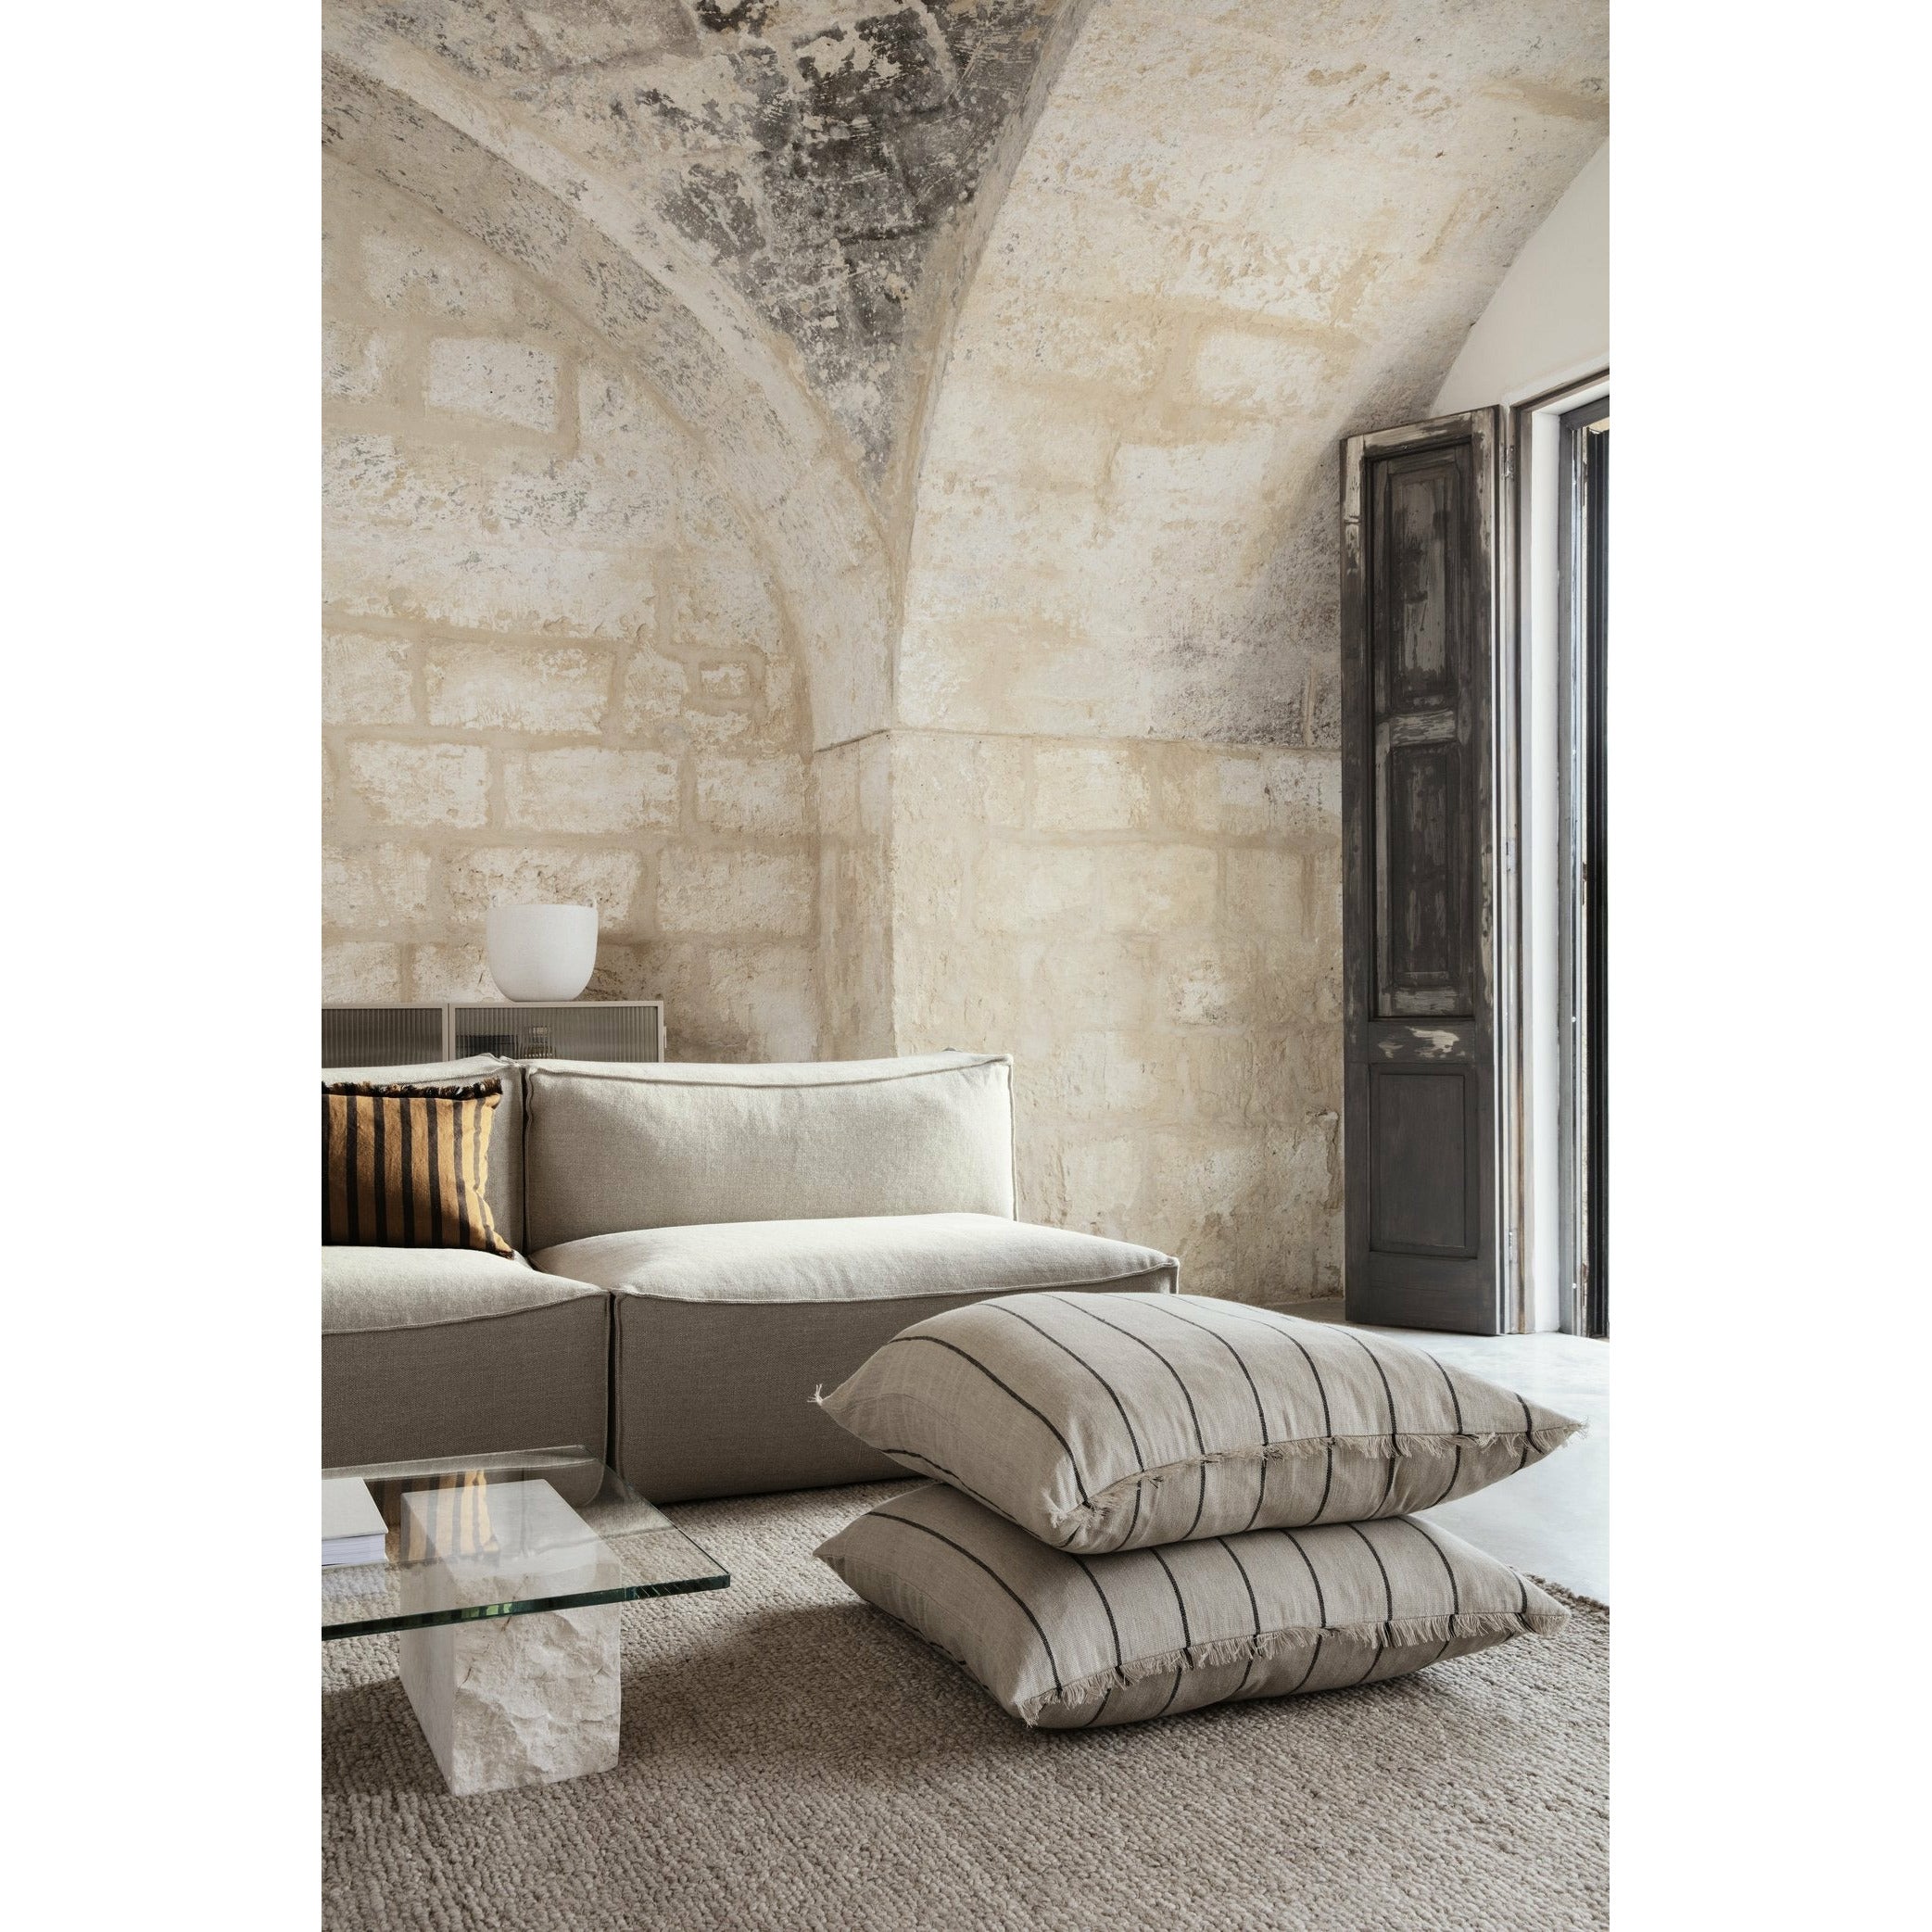 Ferm Living Catena -sohva yhdistävä kulma S200 puuvilla liinavaatteet, luonnollinen